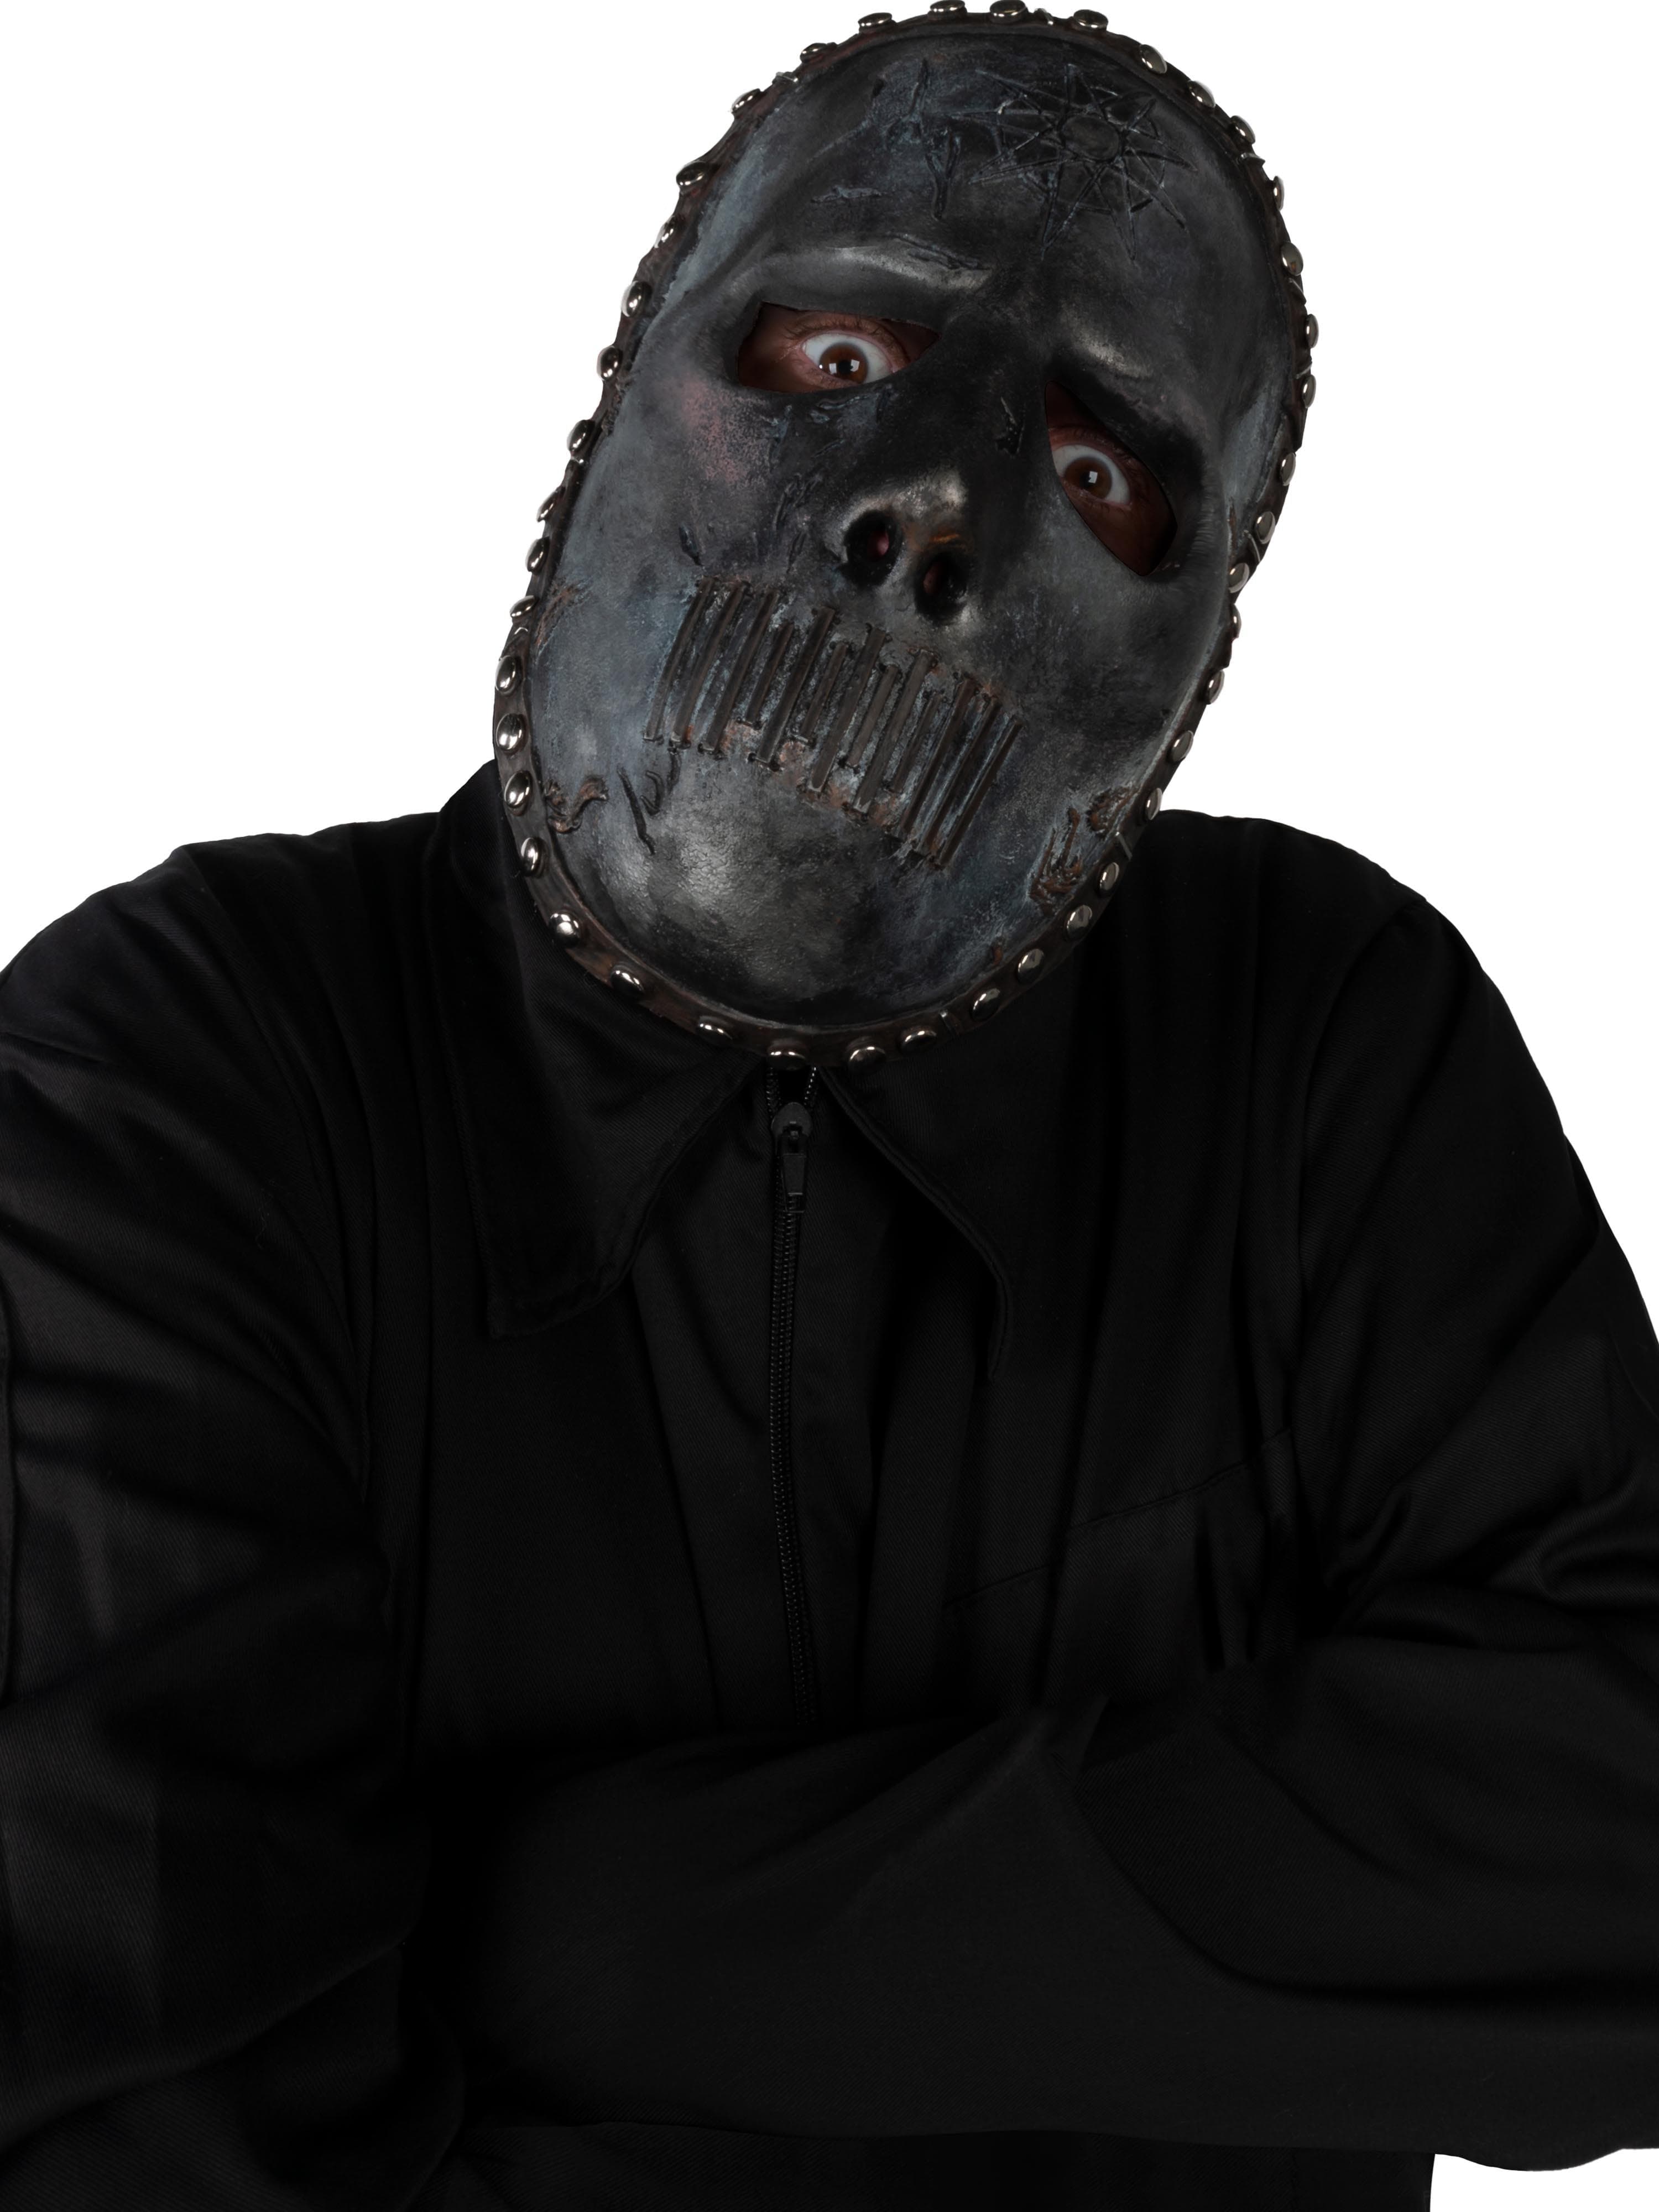 Men's Slipknot Jay Weinberg Mask - costumes.com